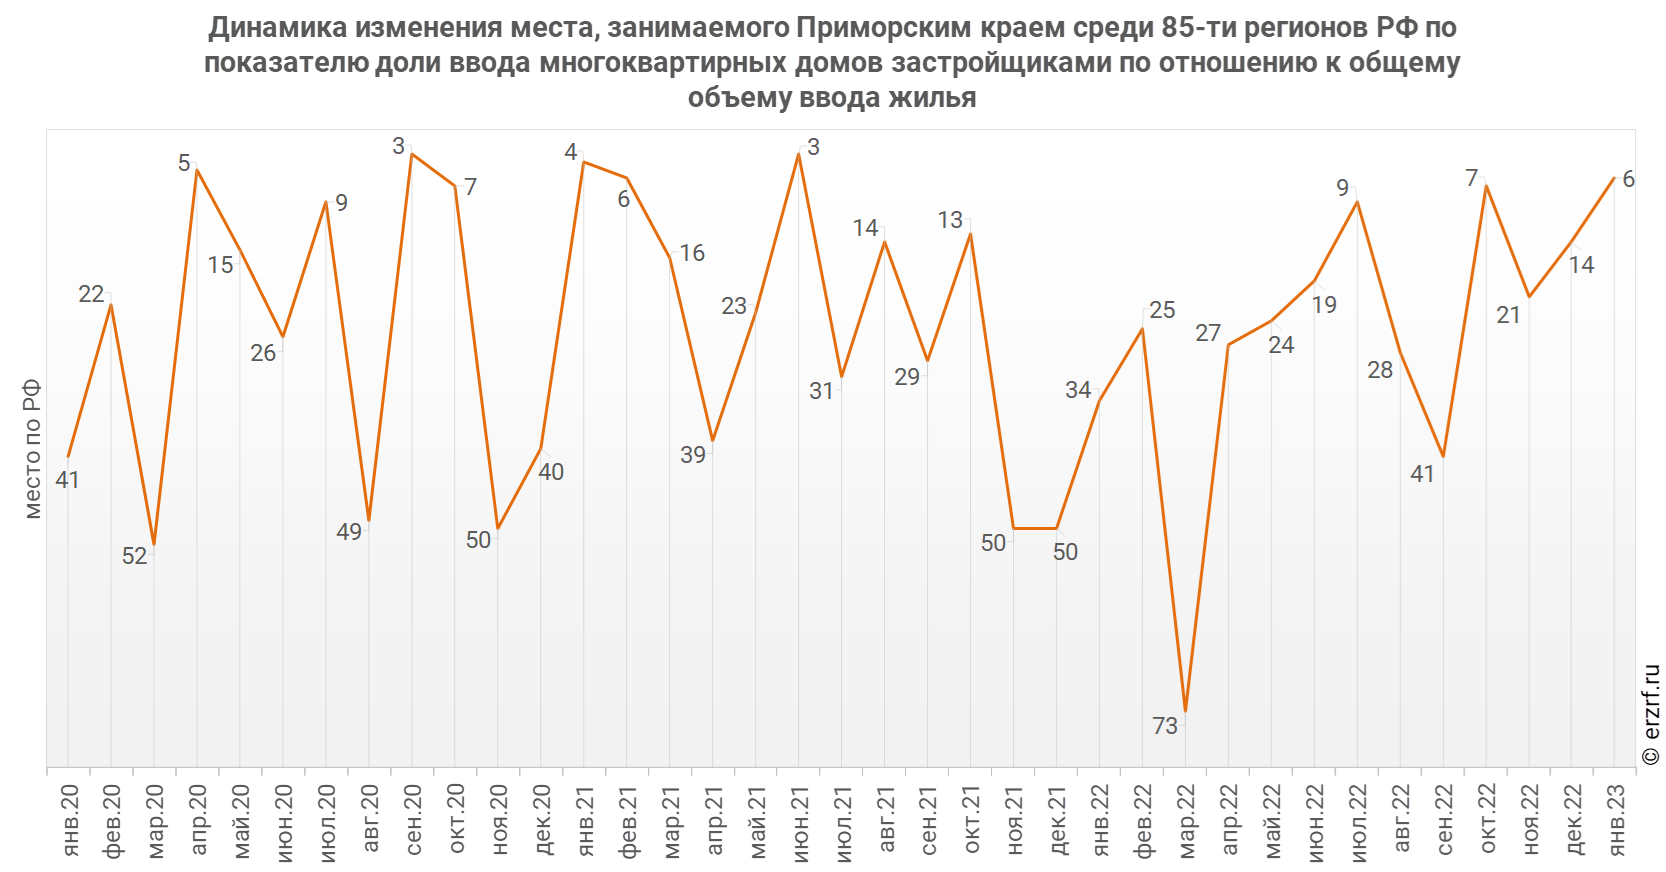 Динамика изменения места, занимаемого Приморским краем среди 85‑ти регионов РФ по показателю доли ввода многоквартирных домов застройщиками по отношению к общему объему ввода жилья